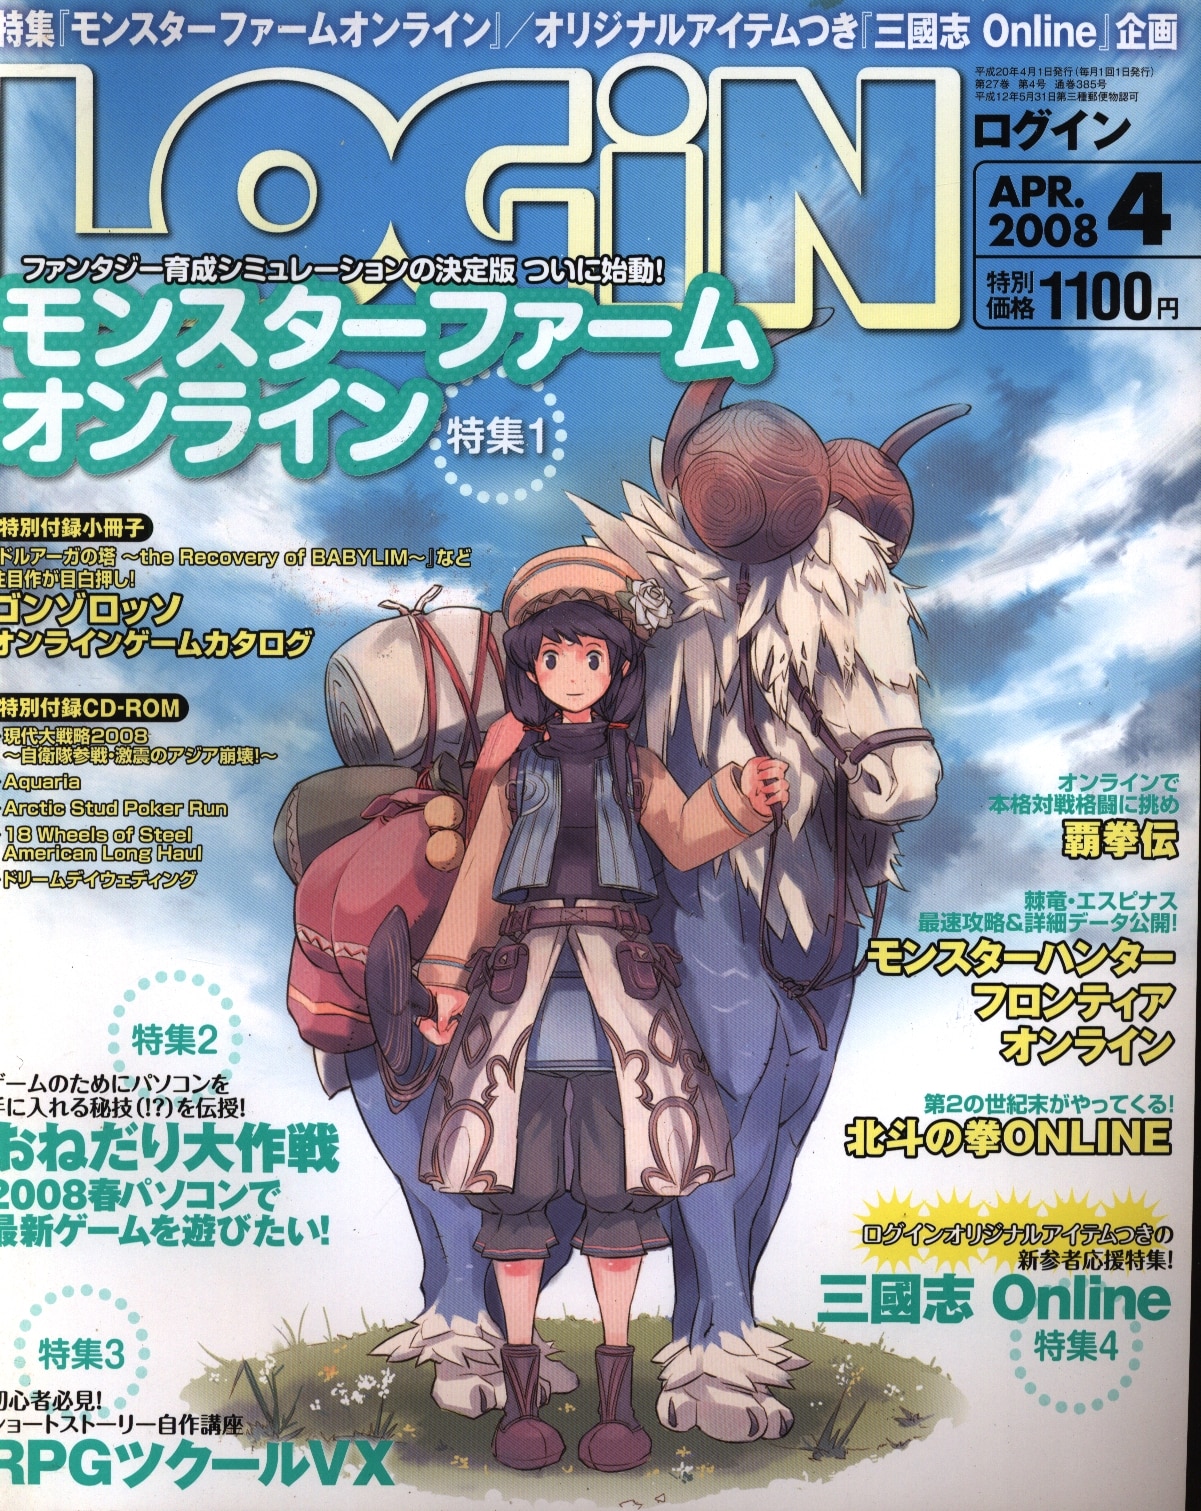 エンターブレイン 08年 平成年 のゲーム雑誌 Login 08年04月号 0804 まんだらけ Mandarake